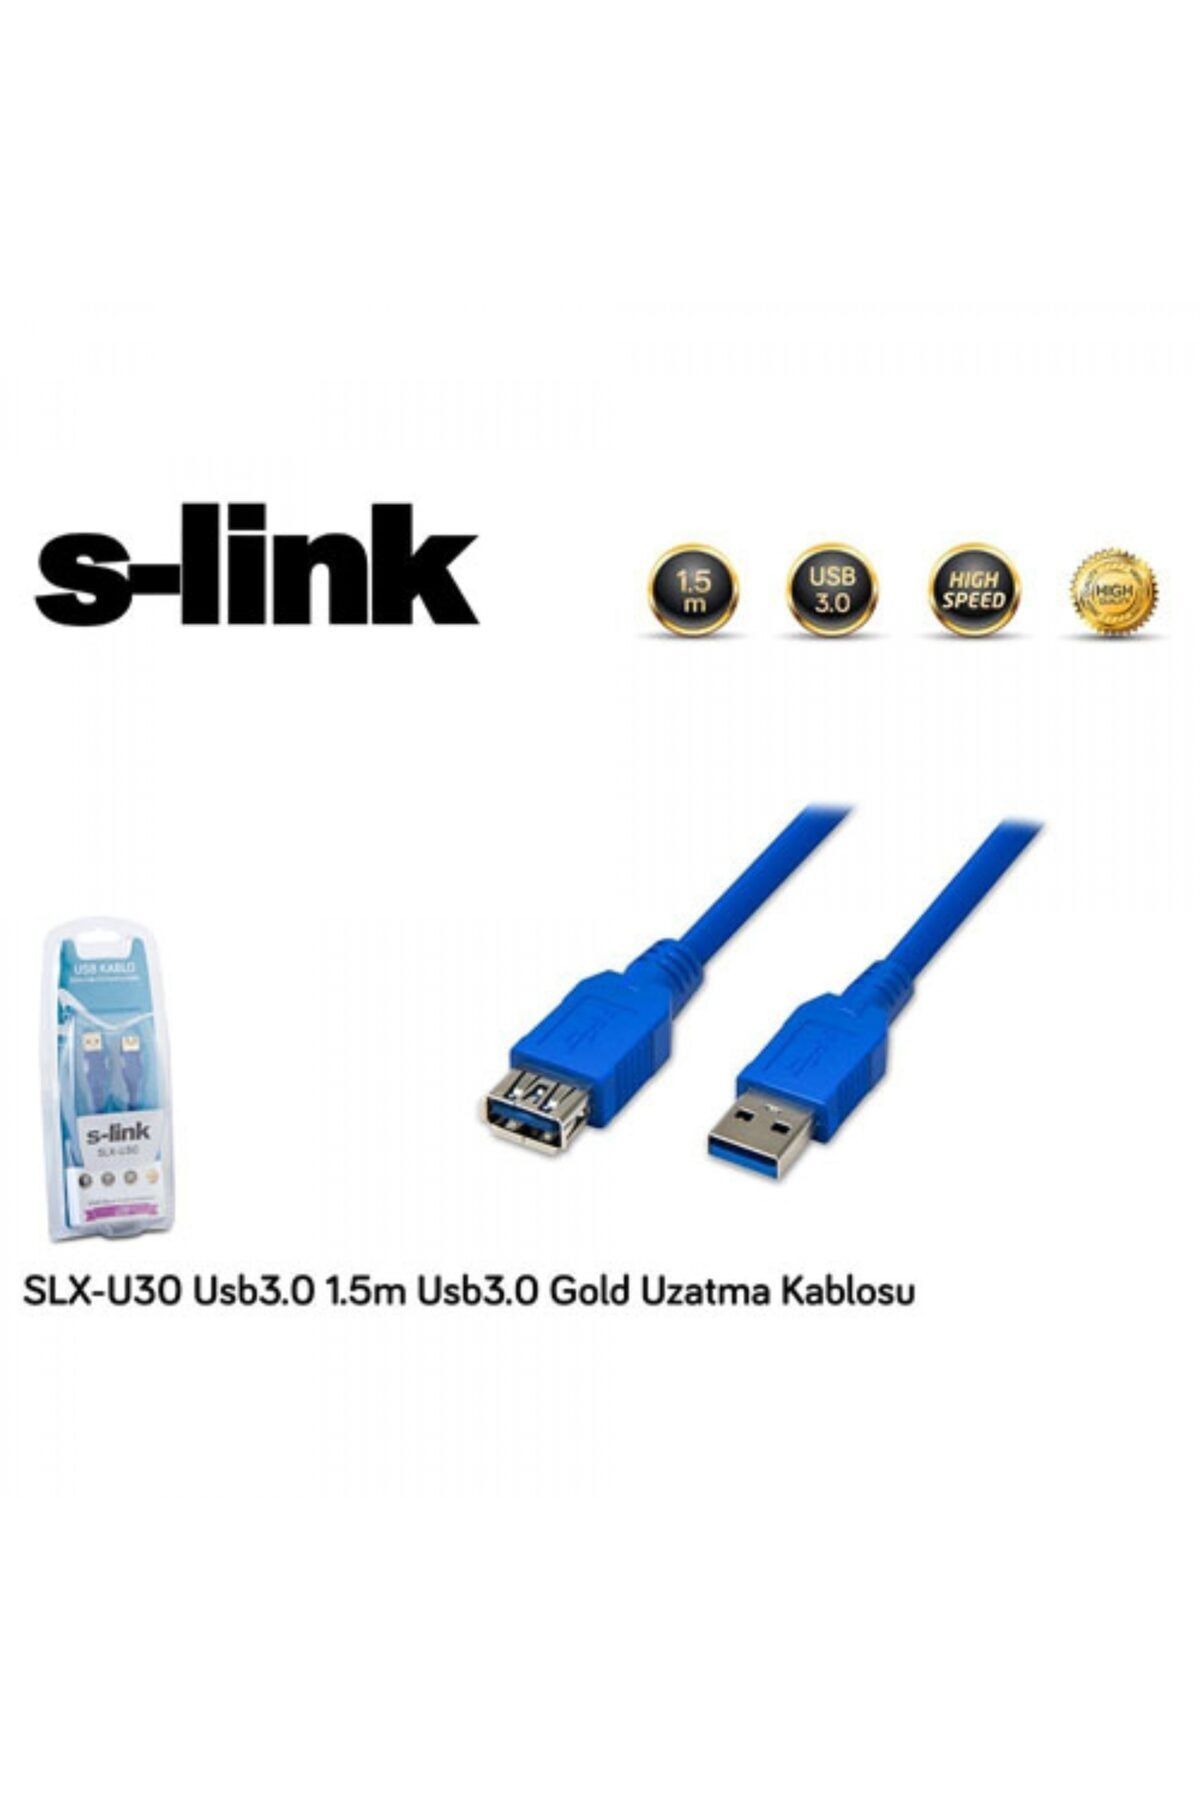 S-Link Slx-u30 Usb3.0 Gold Uzatma Kablosu ( 1.5 Metre )